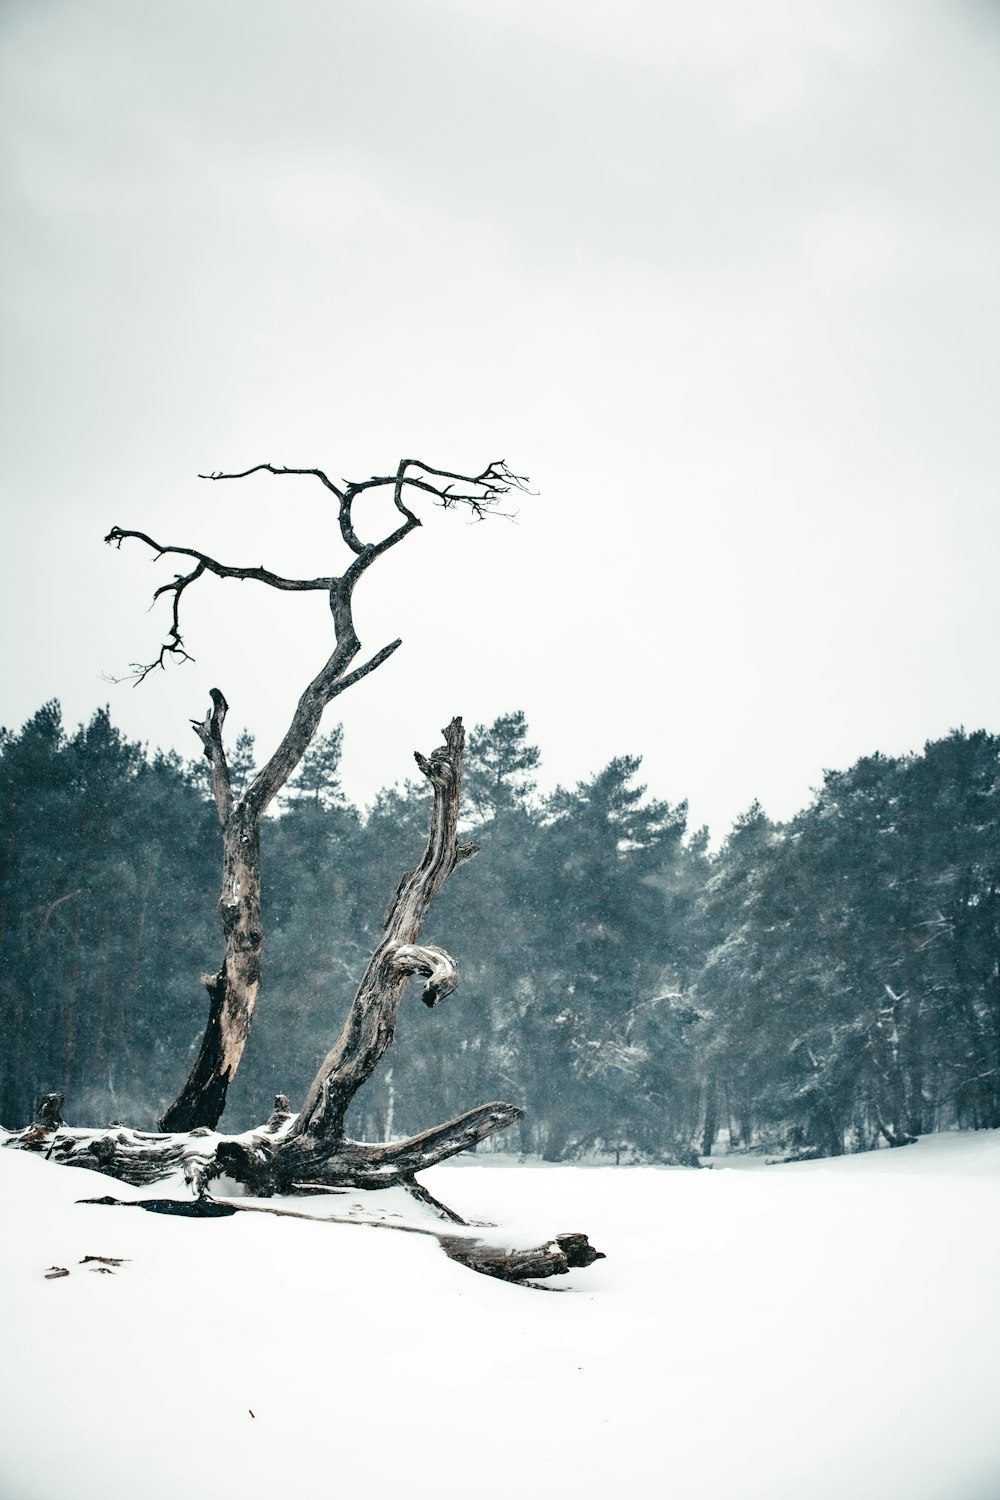 galho de árvore marrom no chão coberto de neve